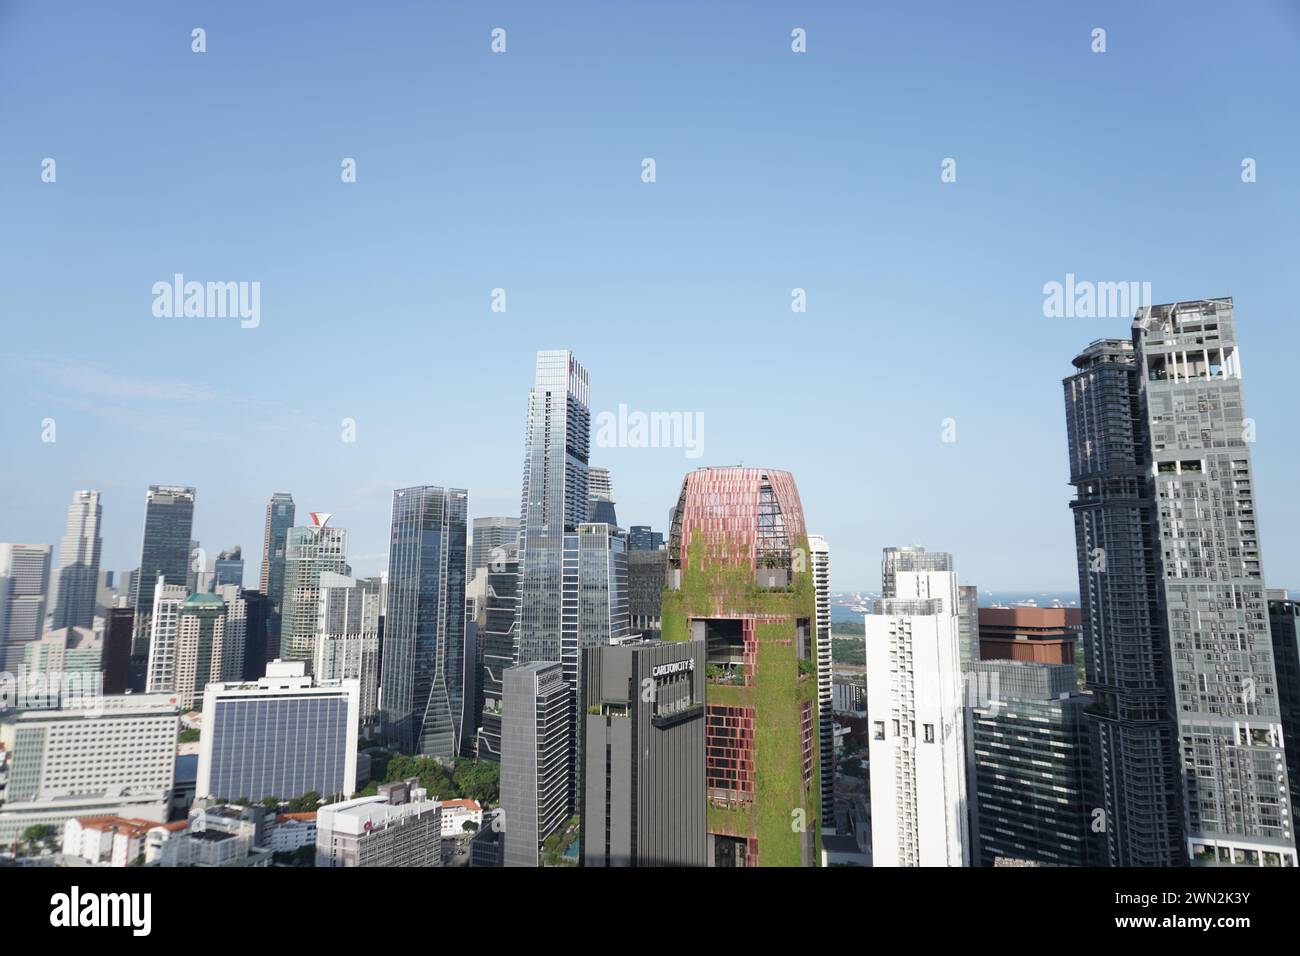 Il CBD di Singapore, un centro finanziario globale, ospita edifici prestigiosi come Plus Building al 20 Cecil Street, 049705, emblematico dei suoi traffici affari Foto Stock